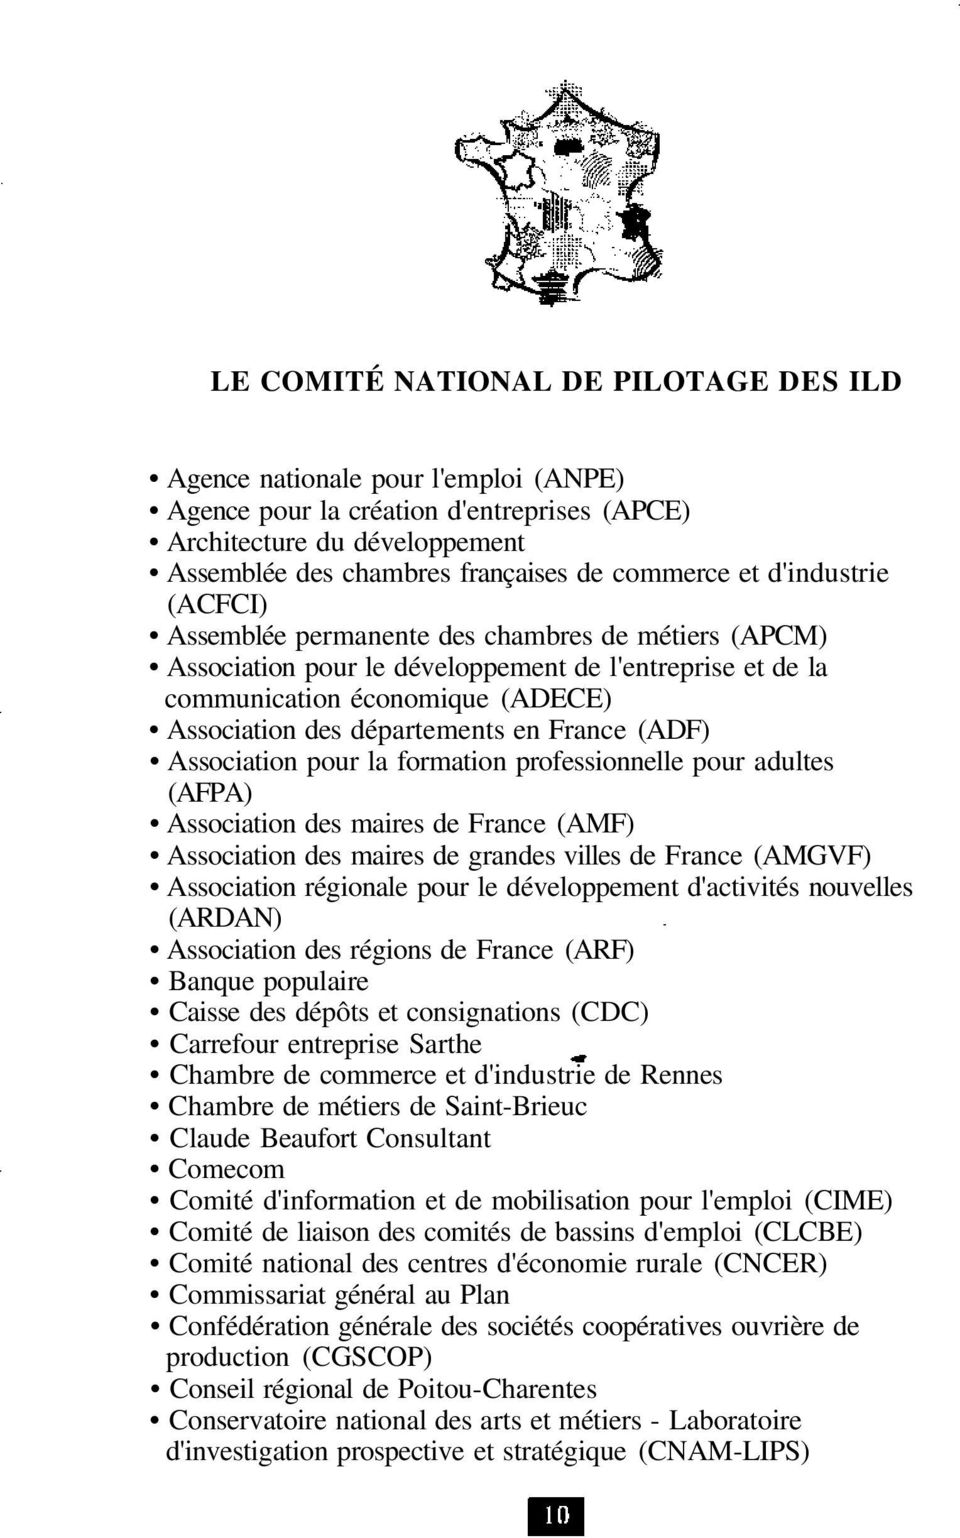 France (ADF) Association pour la formation professionnelle pour adultes (AFPA) Association des maires de France (AMF) Association des maires de grandes villes de France (AMGVF) Association régionale